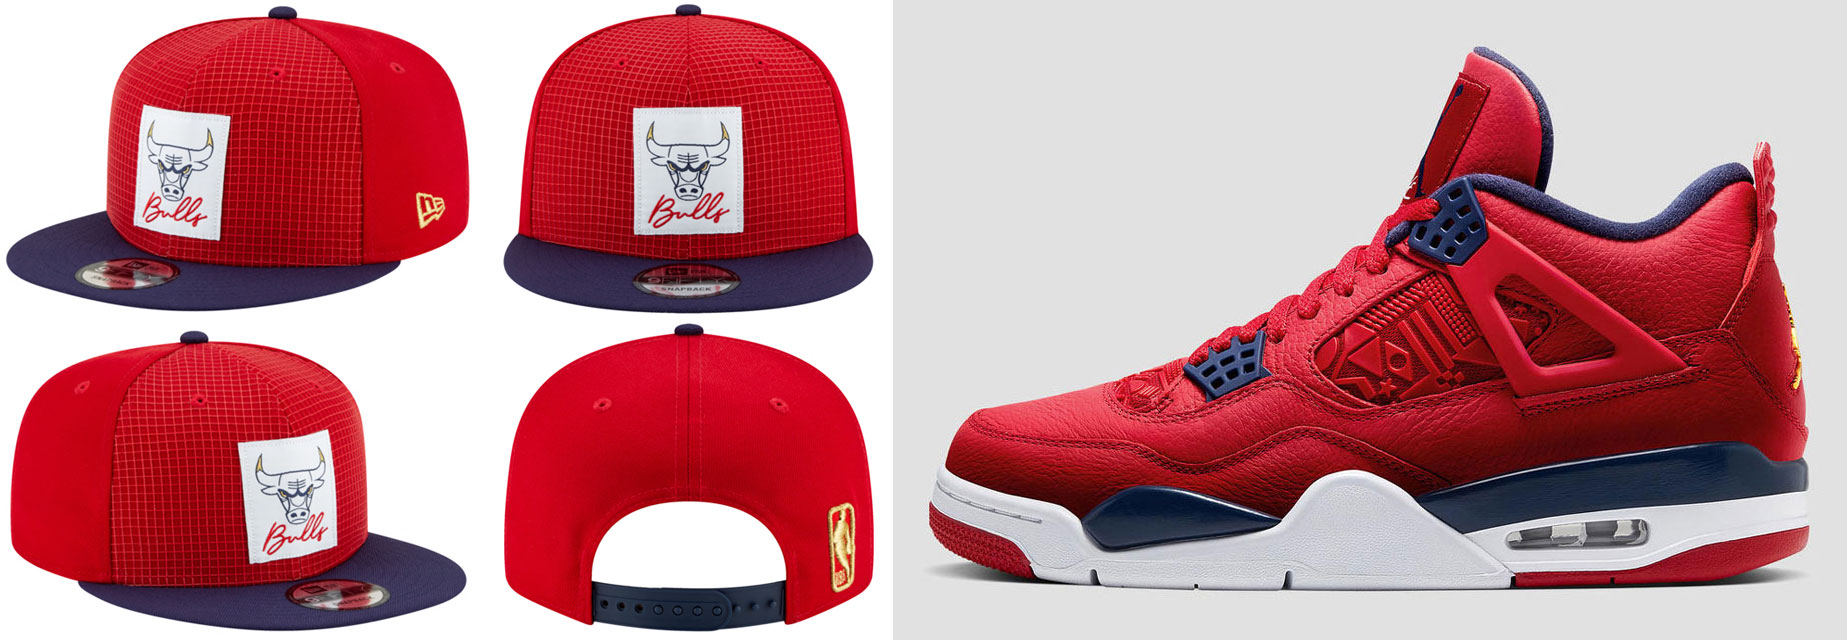 Air Jordan 4 FIBA Bulls Snapback Hat 